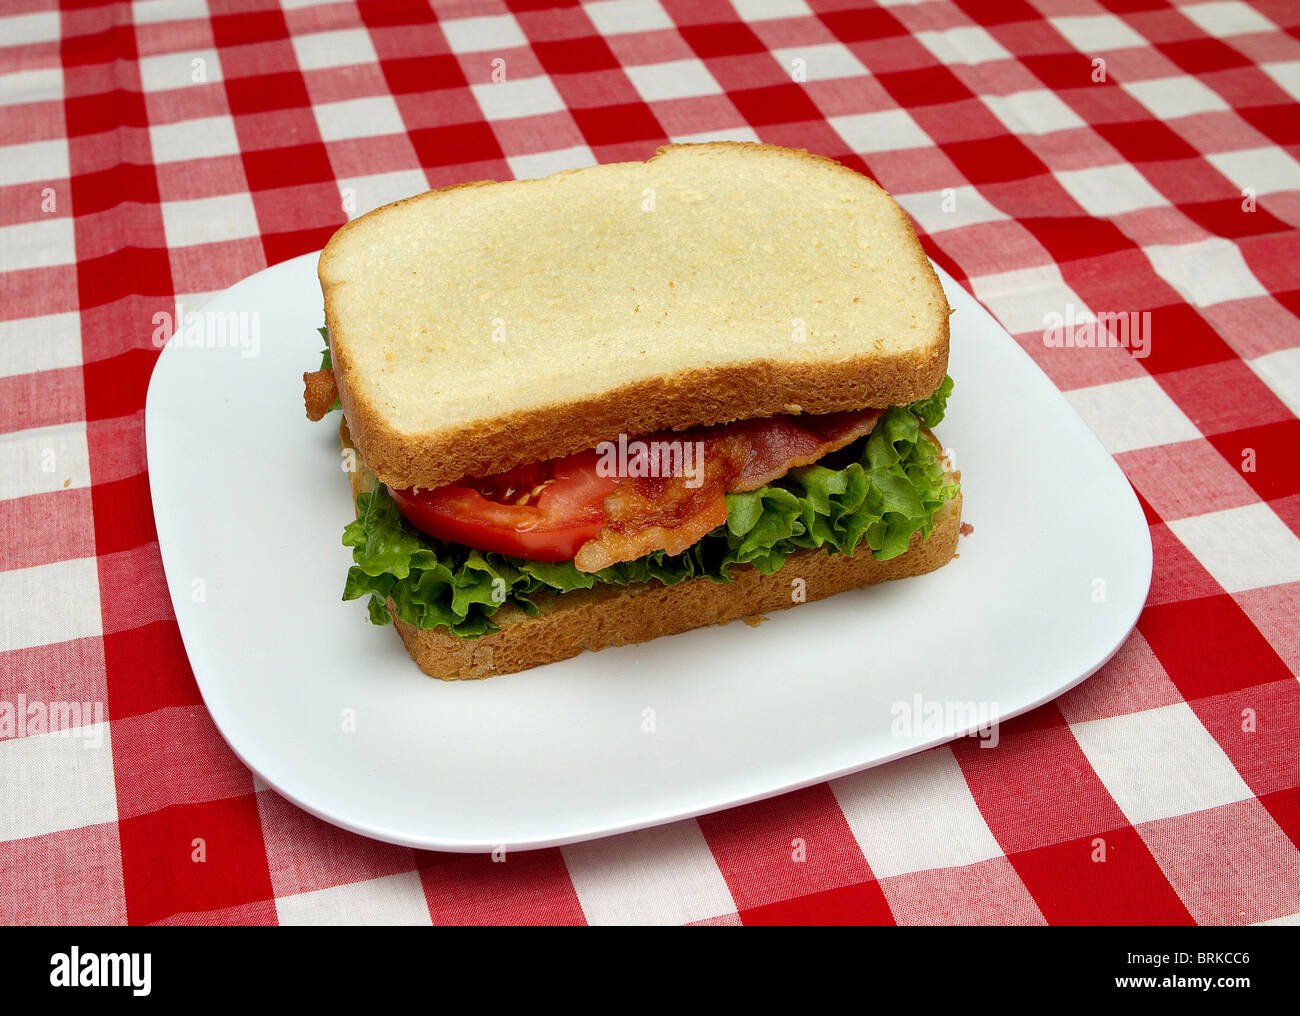 Completare tutto il blt sandwich su una piastra bianca con rosso sfondo selezionata Foto Stock